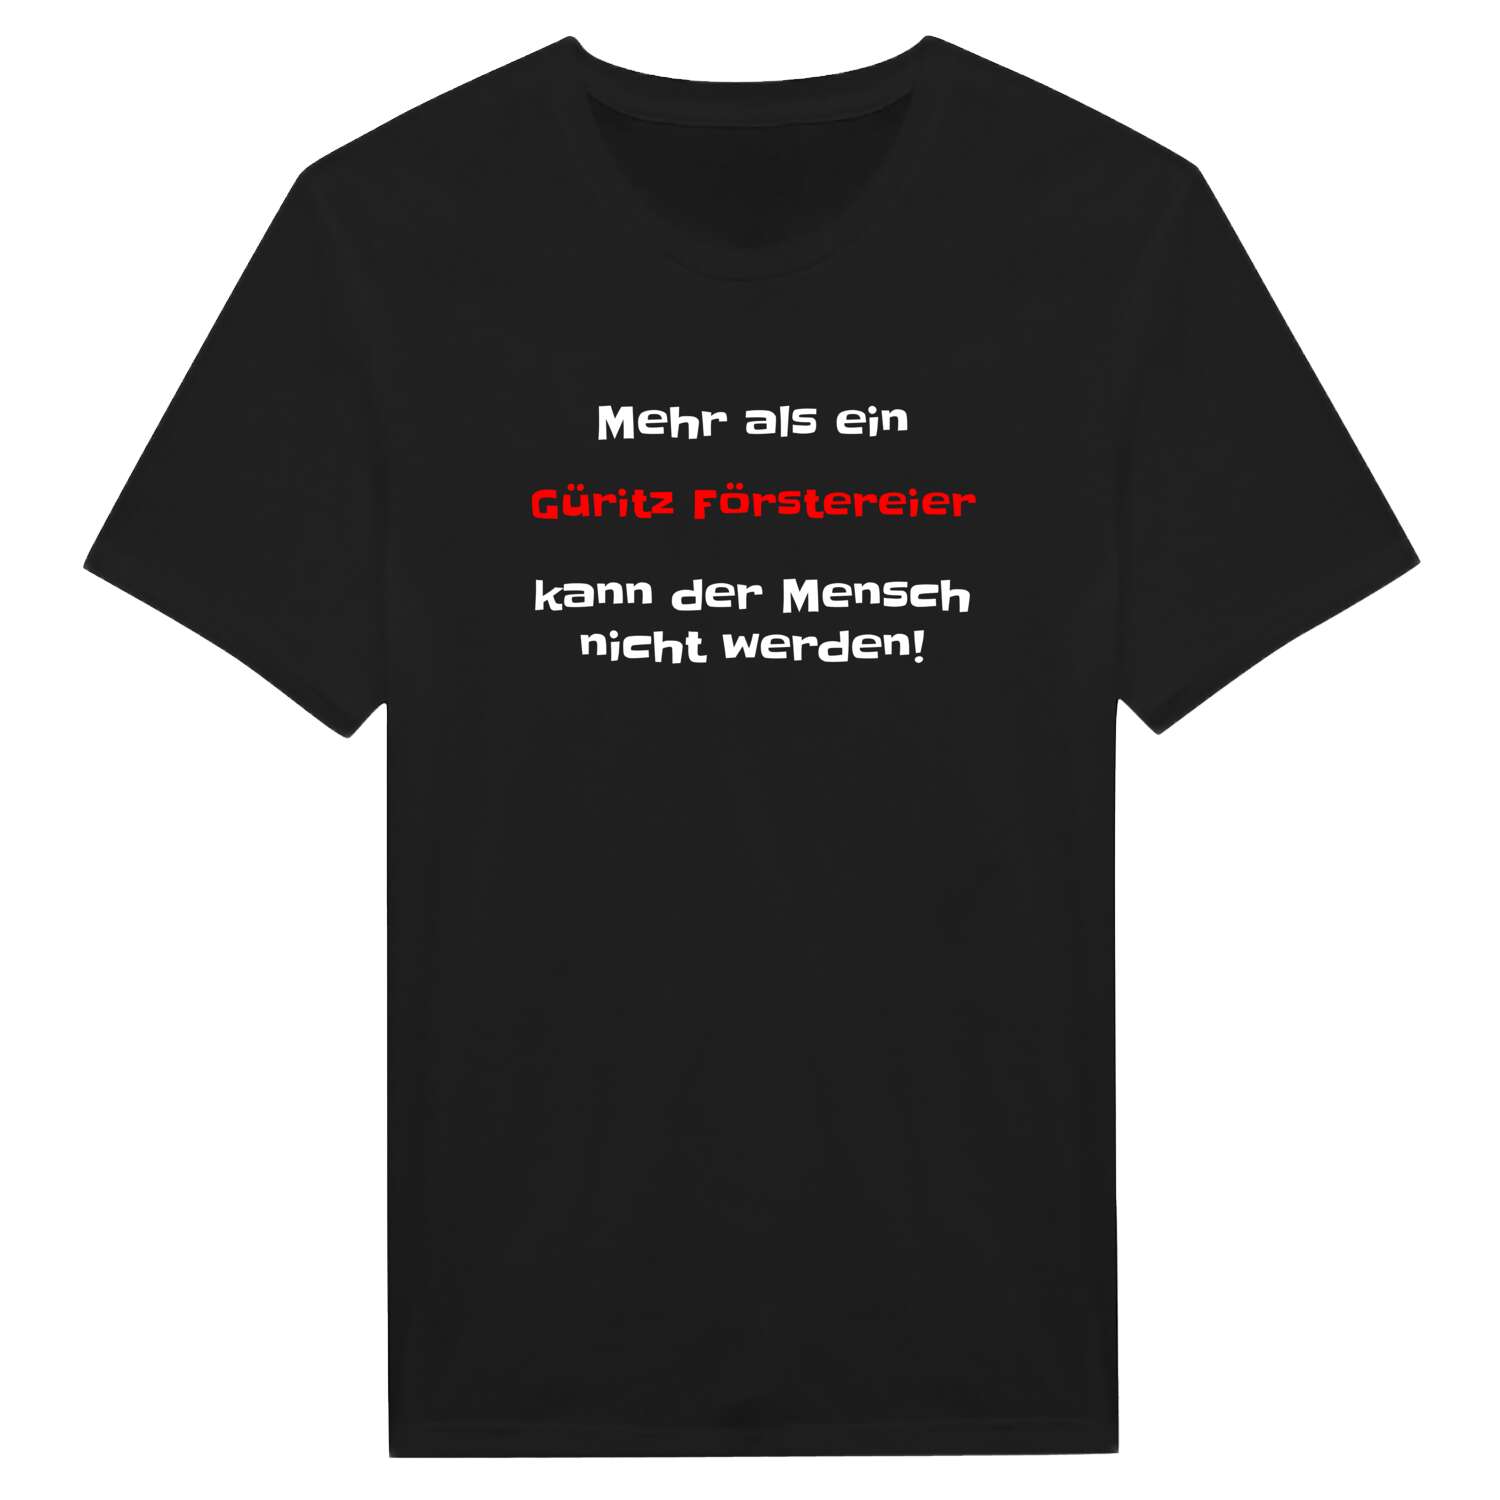 Güritz Försterei T-Shirt »Mehr als ein«